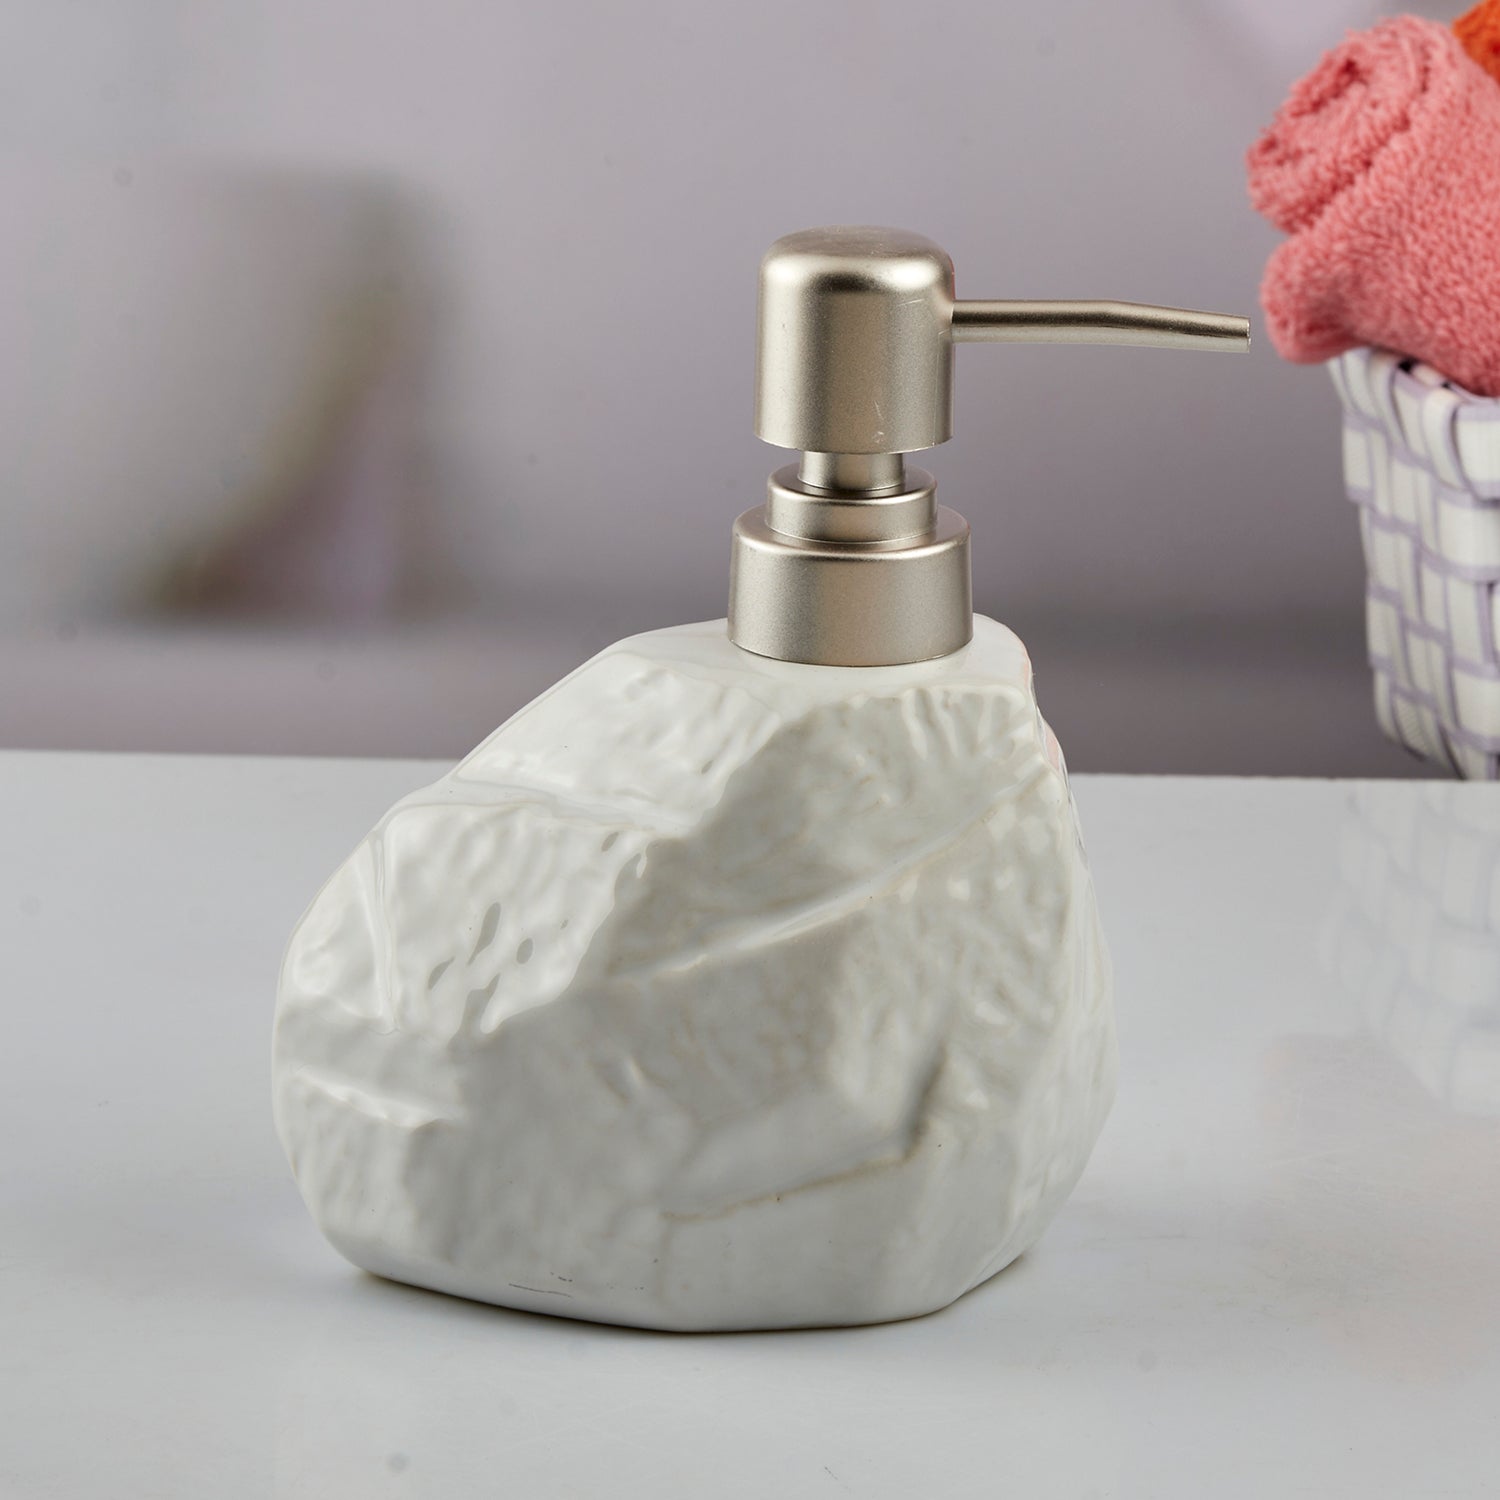 Ceramic Soap Dispenser liquid handwash pump for Bathroom, Set of 1, White (10618)